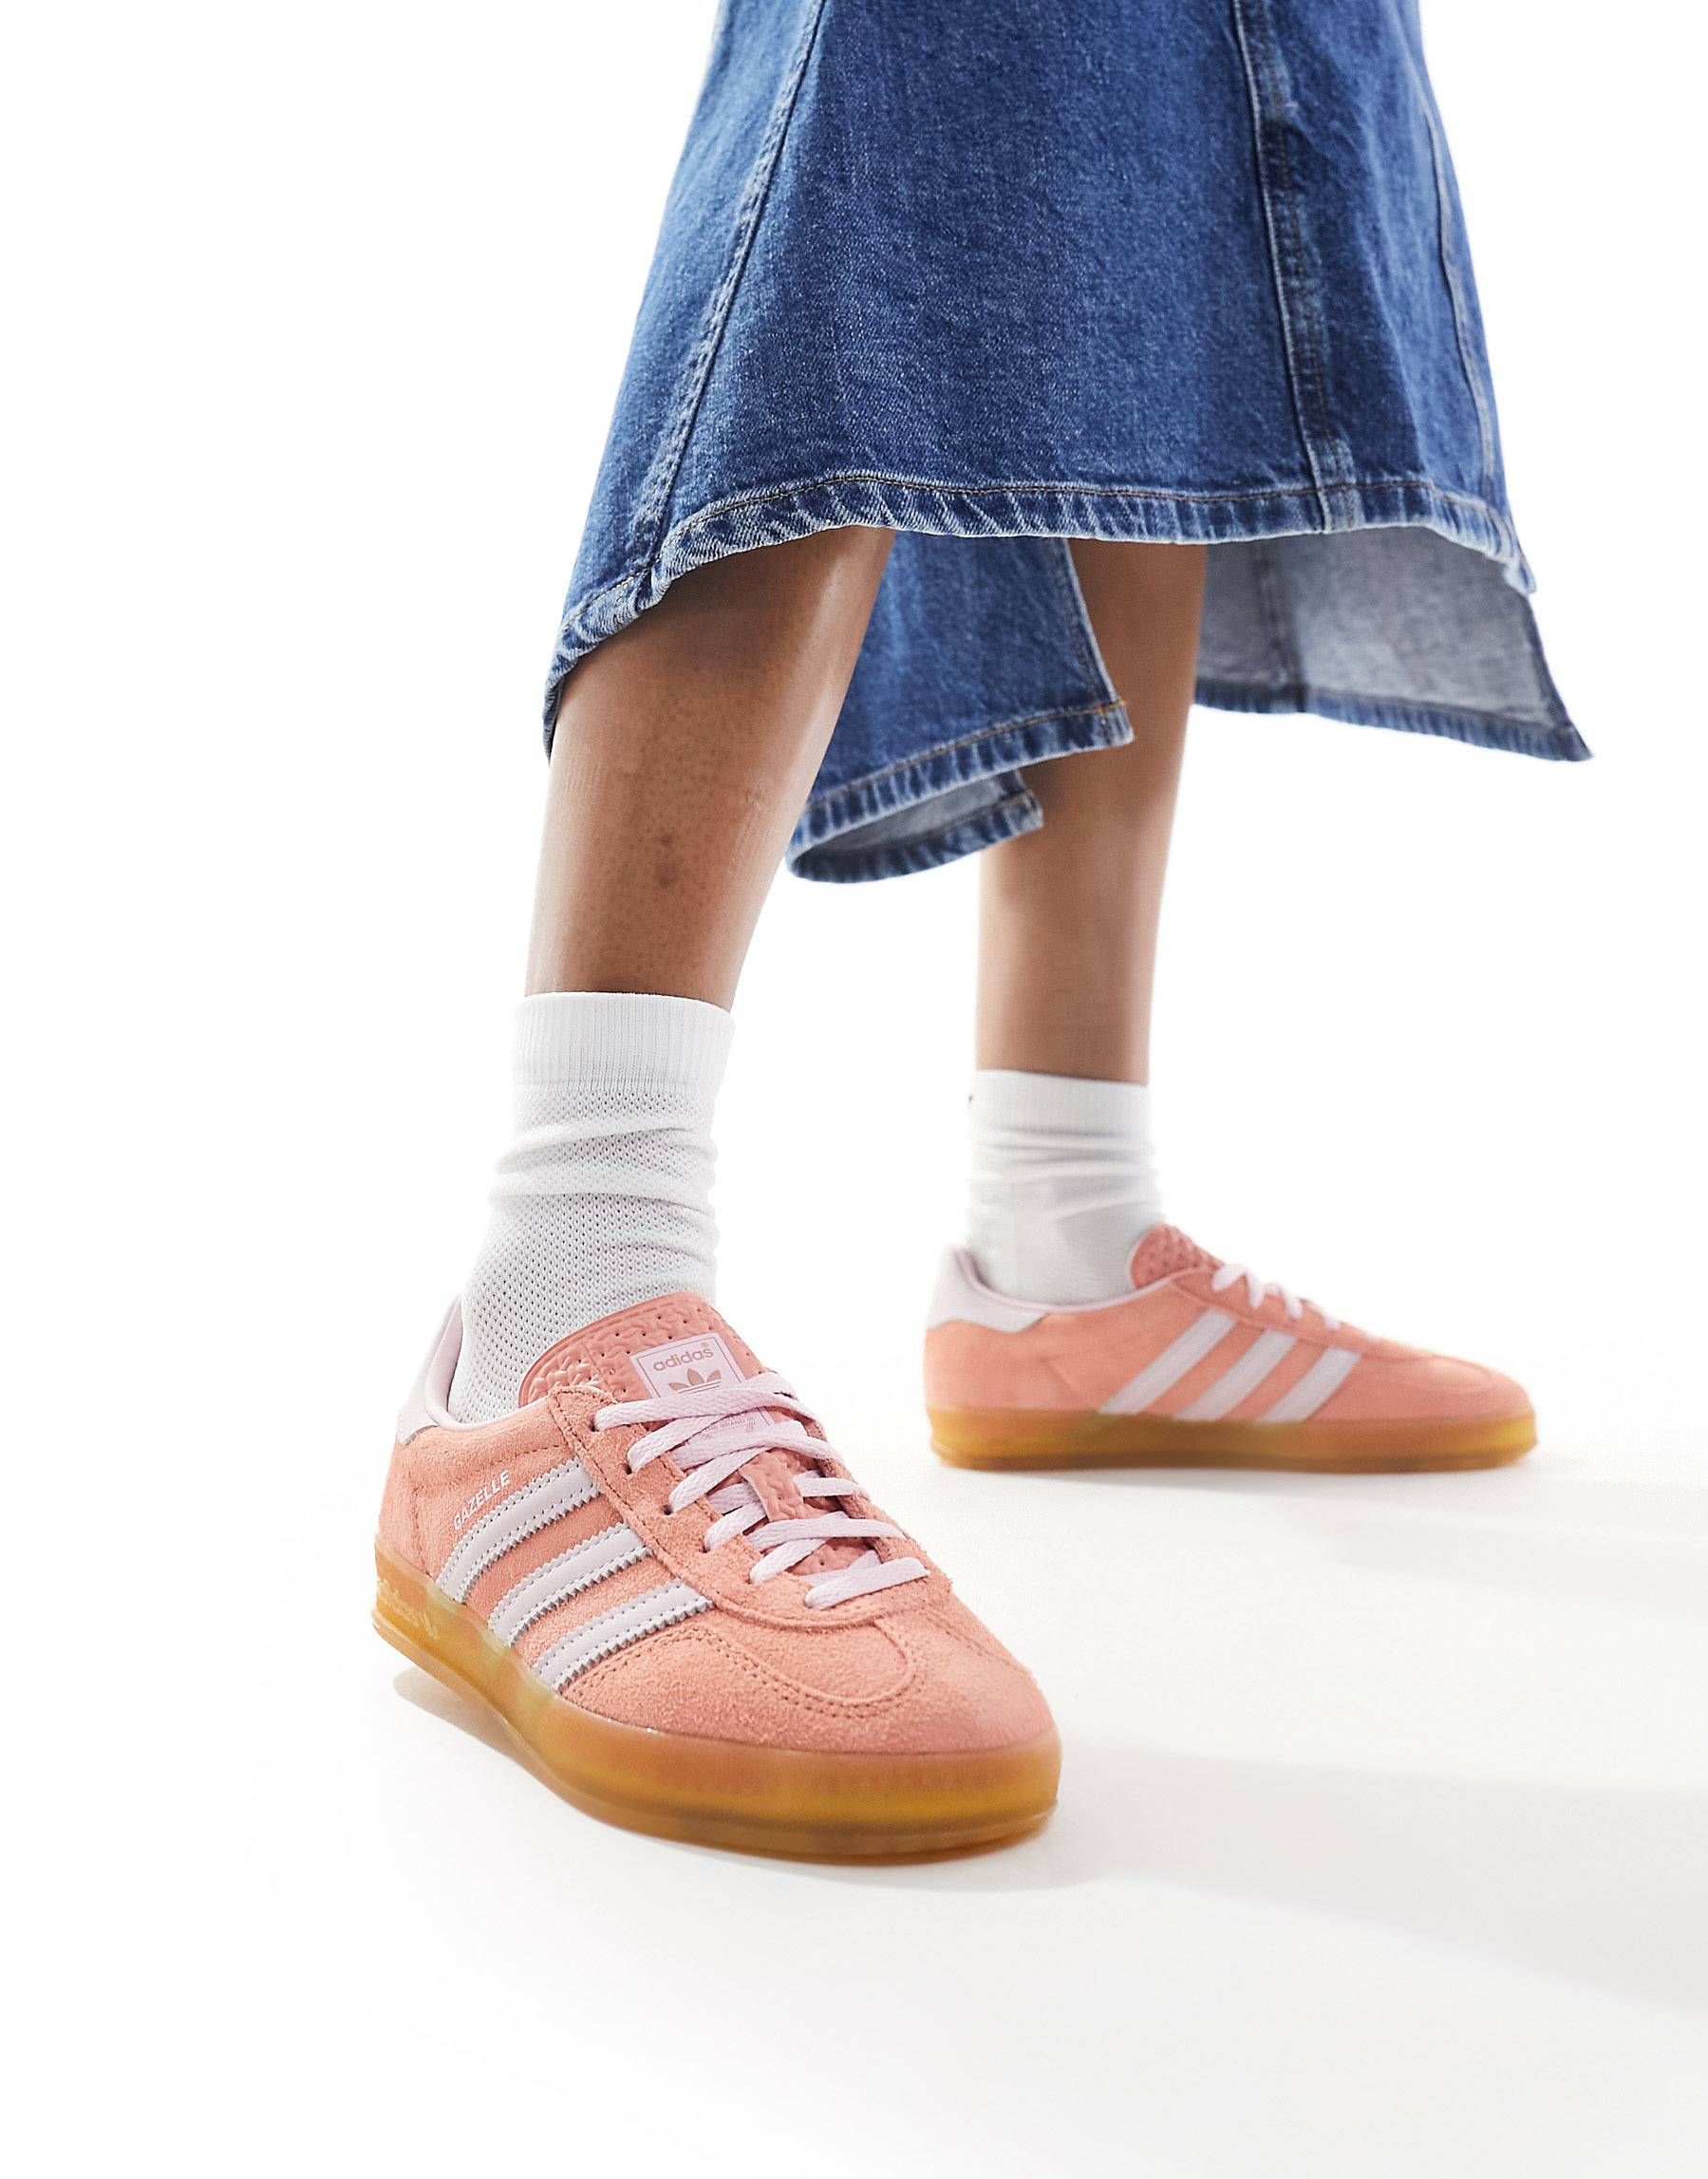 adidas Originals Gazelle Indoor gum sole sneakers in orange and pink | ASOS | ASOS (Global)